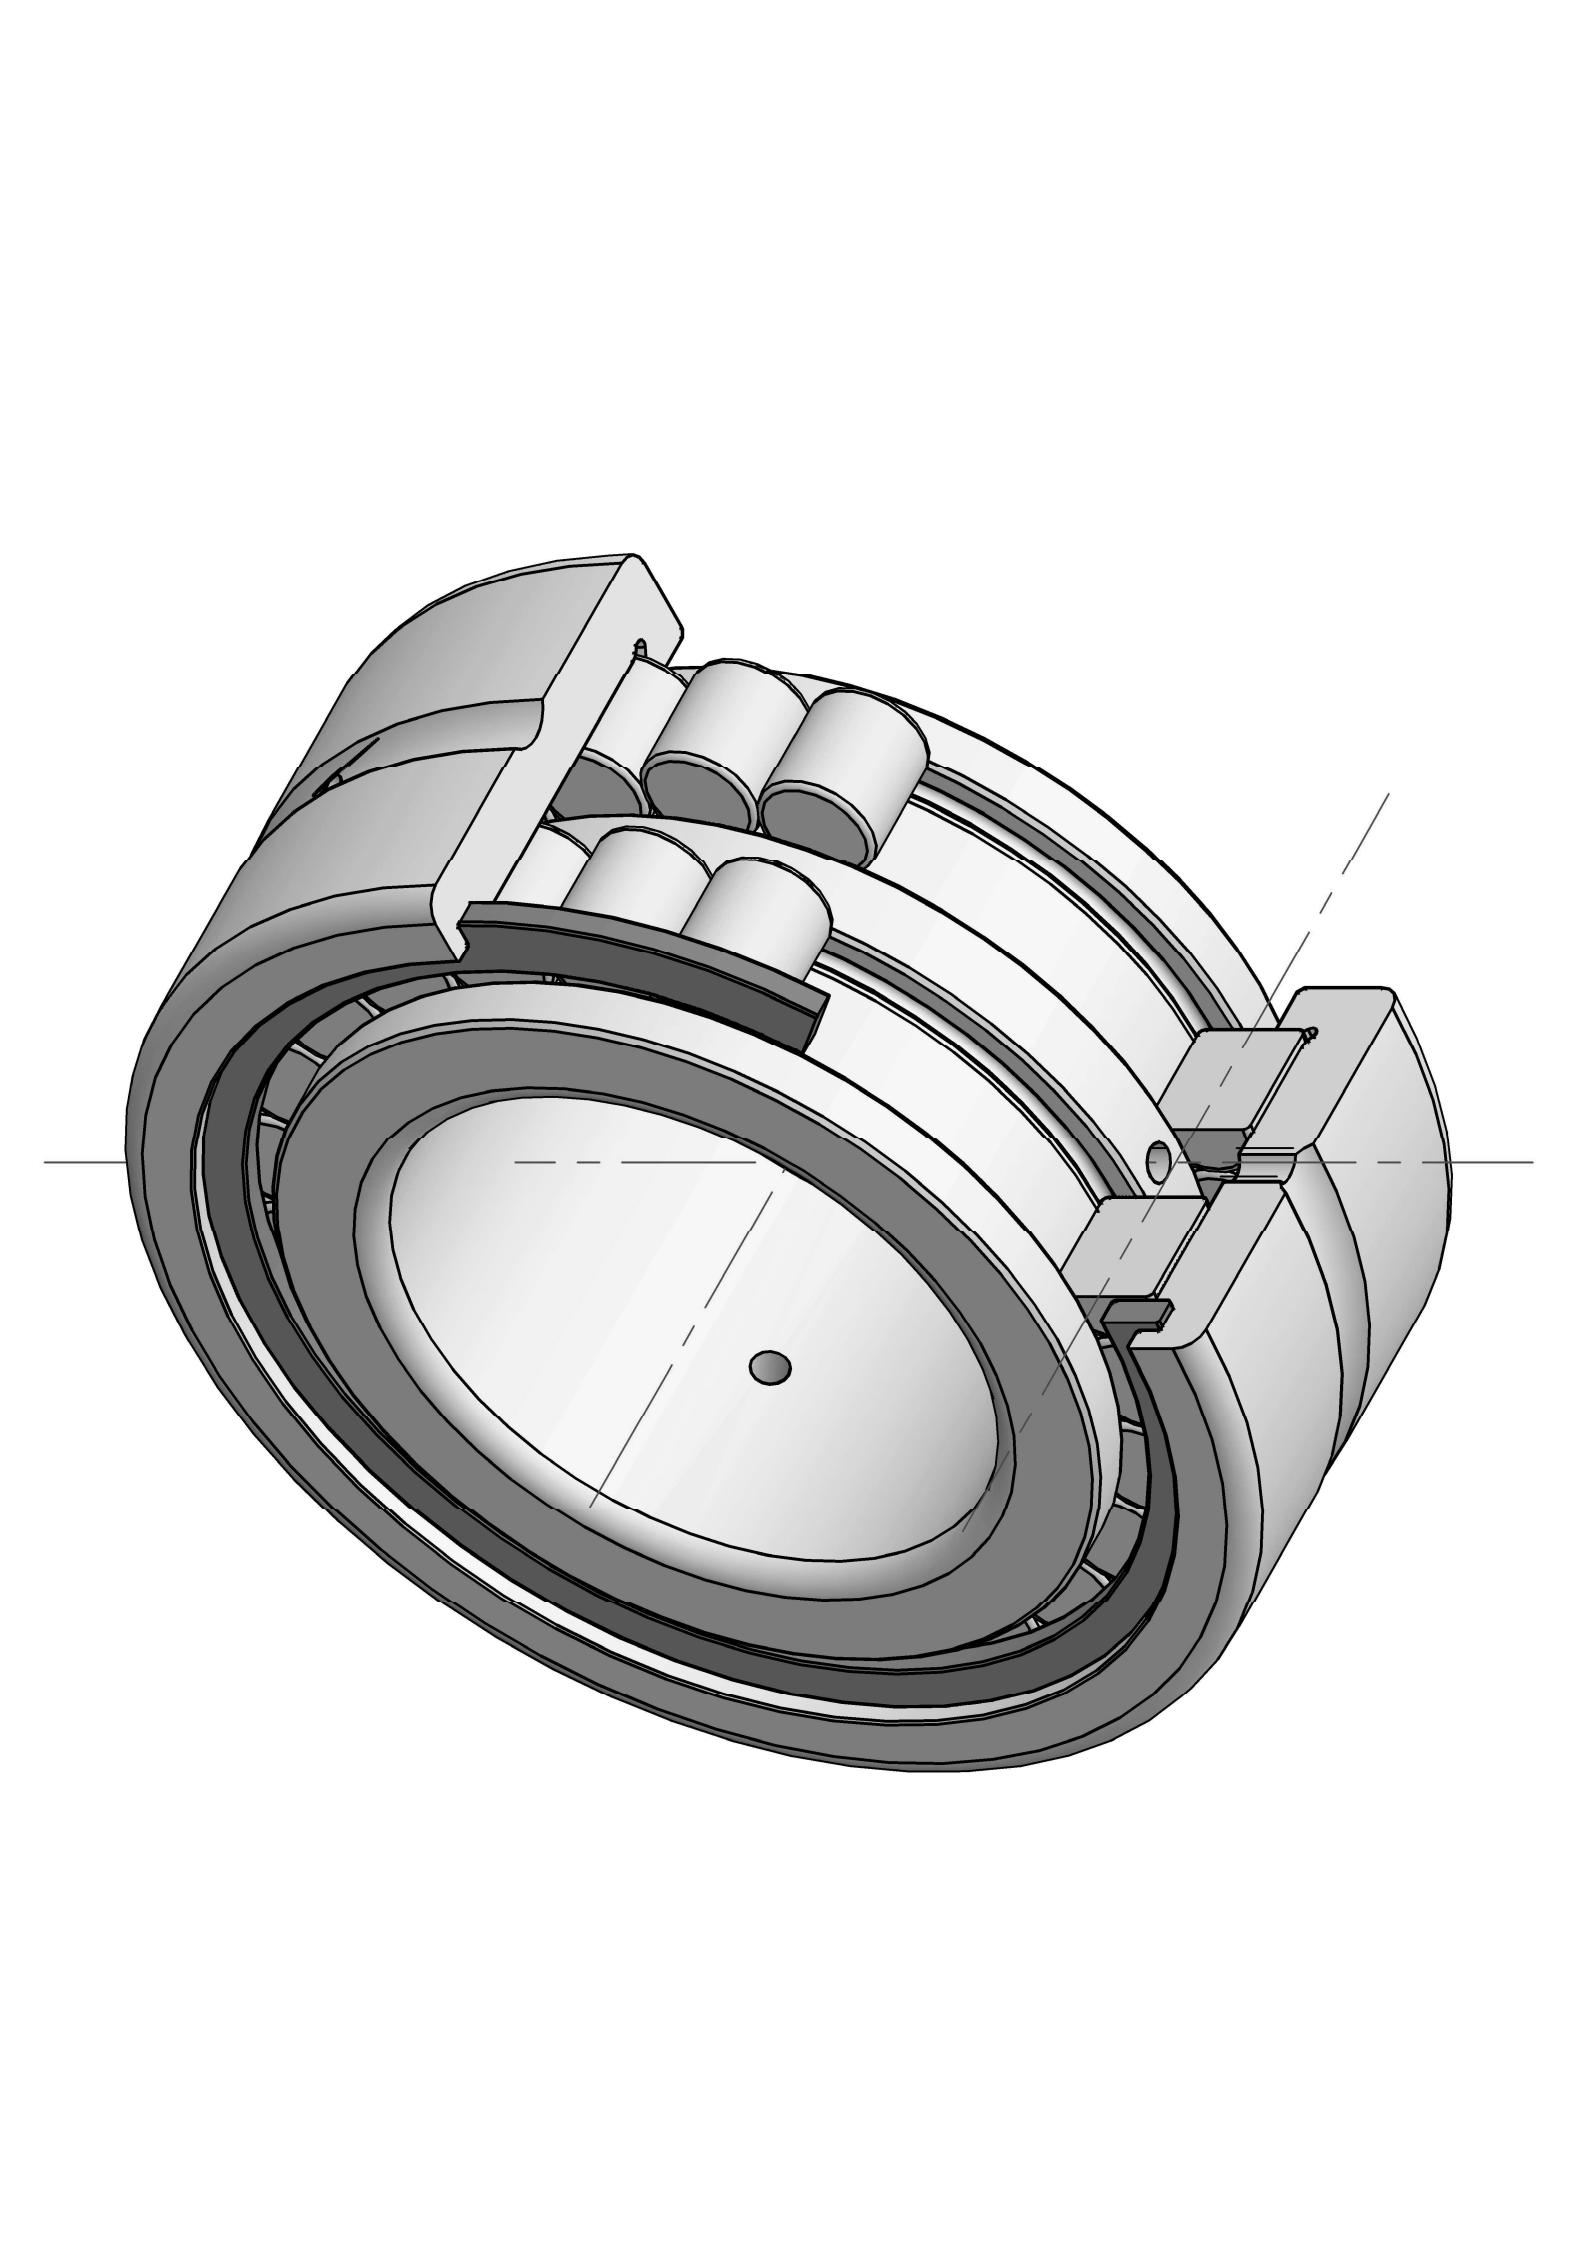 SL185007 Ob chav kab puv ntxiv cylindrical cov menyuam bearings